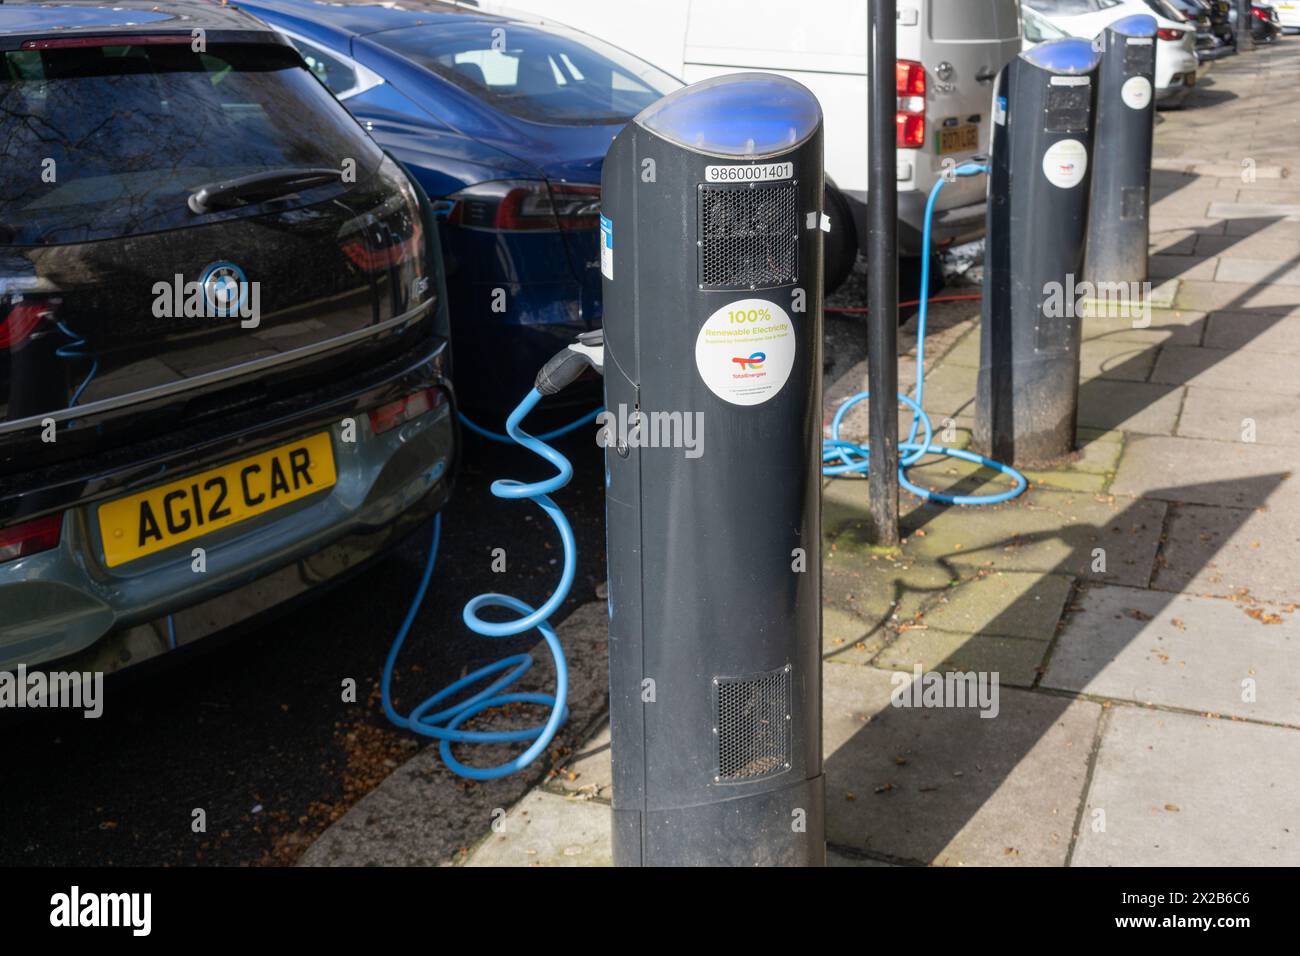 Auto elettriche - una BMW i3 e una Tesla collegate e caricate - presso una stazione di ricarica elettrica di rete pubblica fornita da Source London. Londra, Inghilterra Foto Stock